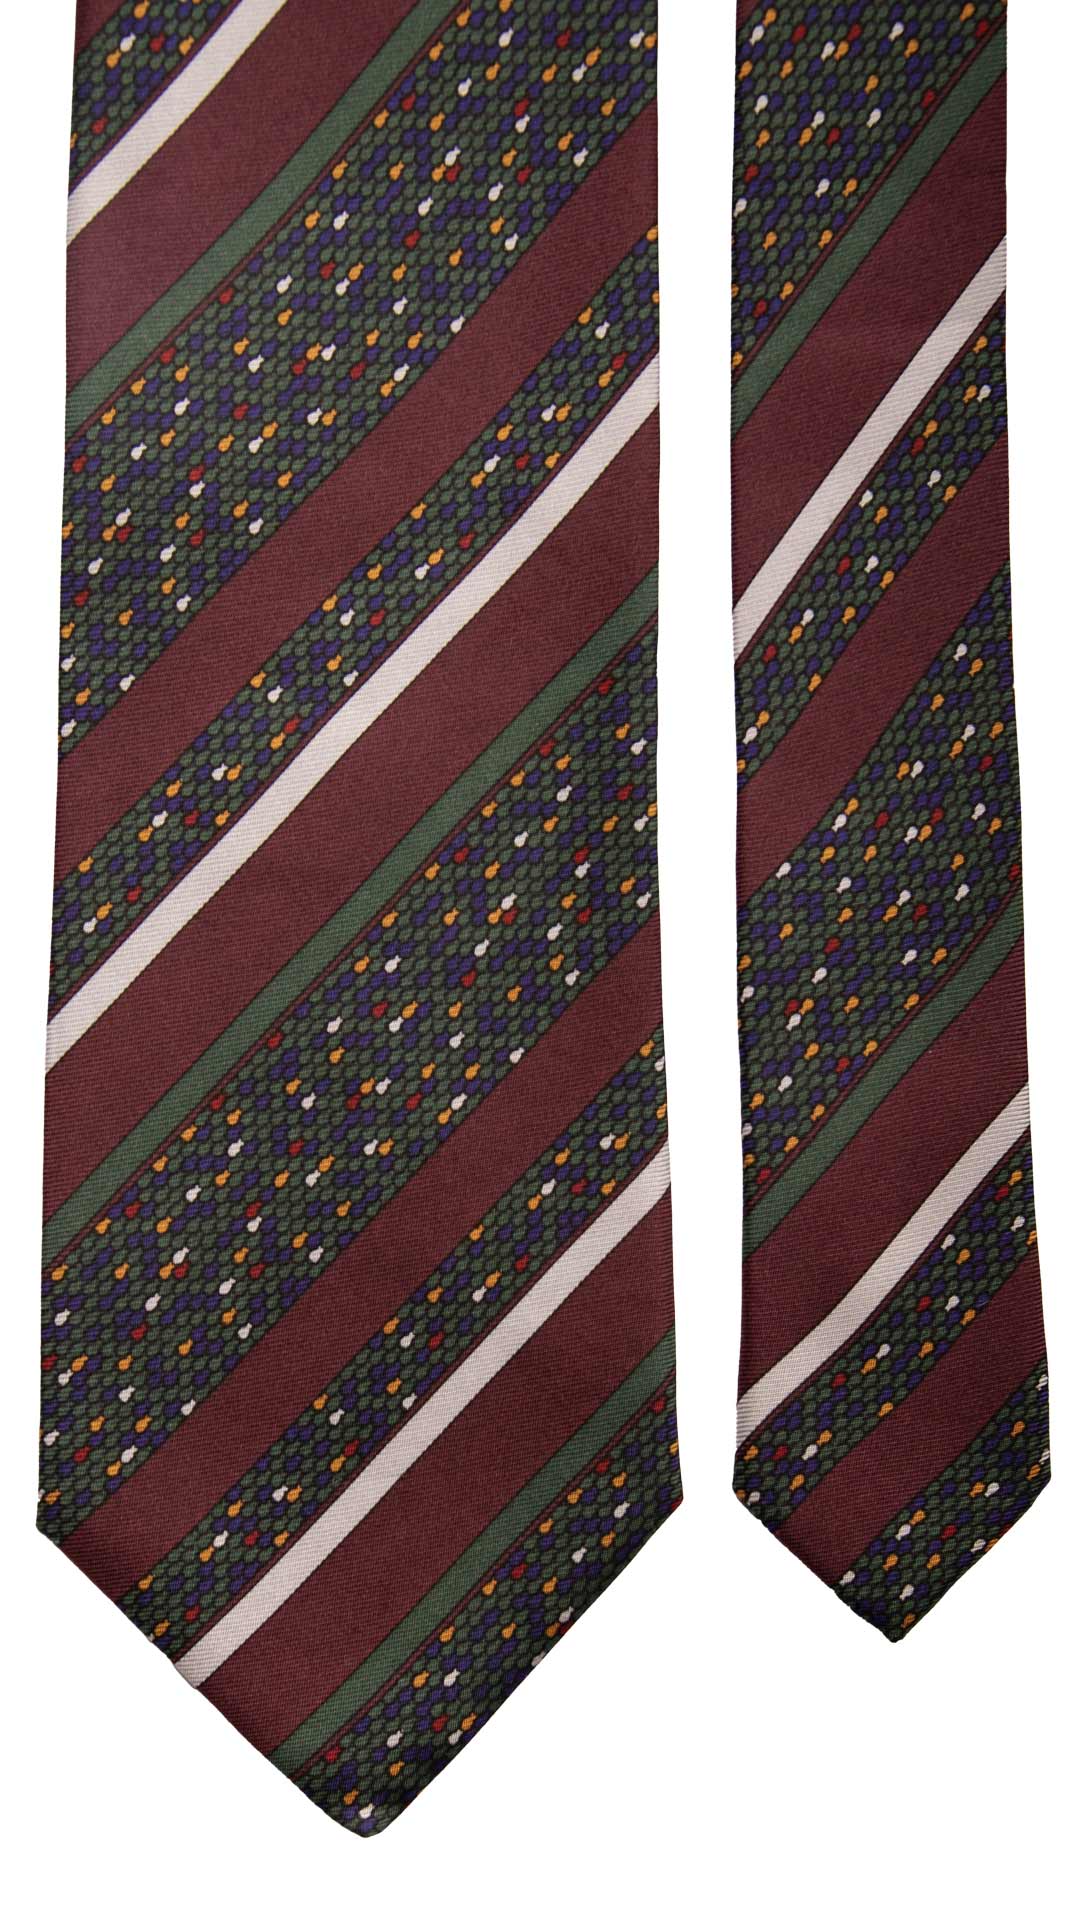 Cravatta Vintage Regimental in Twill di Seta Bordeaux A Righe Multicolor  CV818